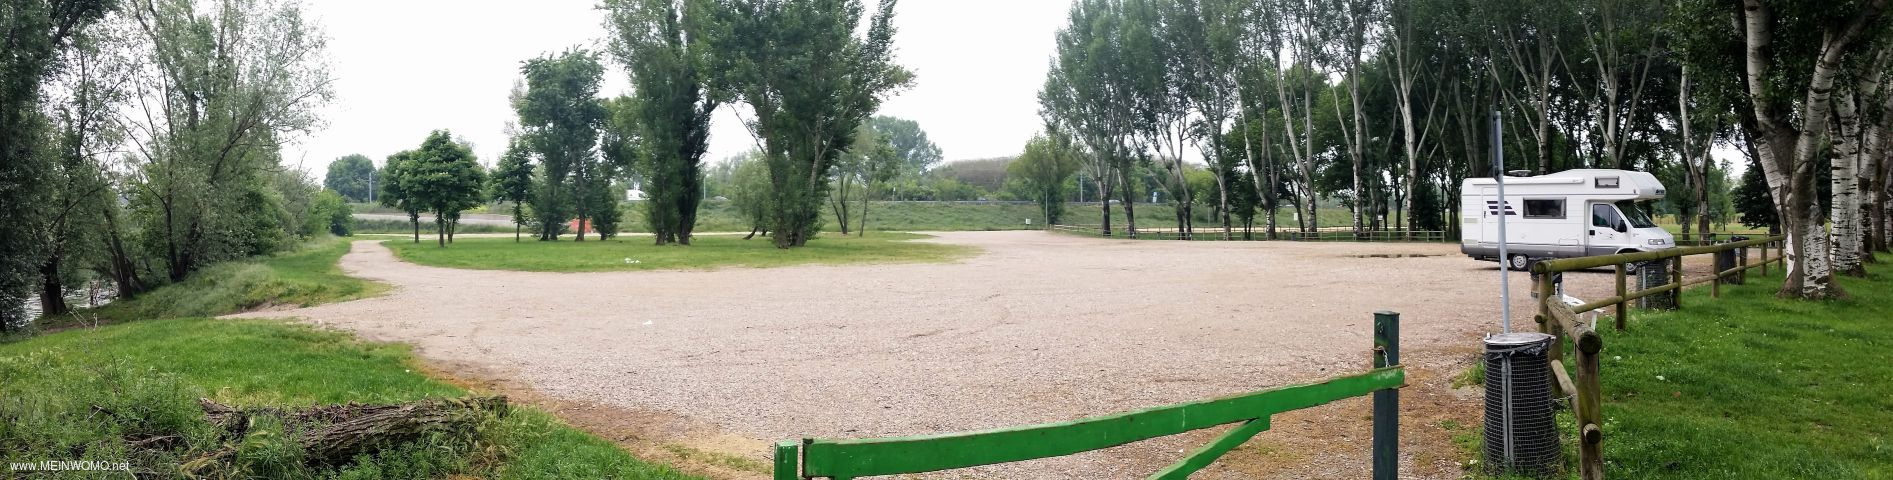  05/2017: Geweldige plek met aangrenzende picknickplaats..  Op de achtergrond wordt opgeheven om de  ...